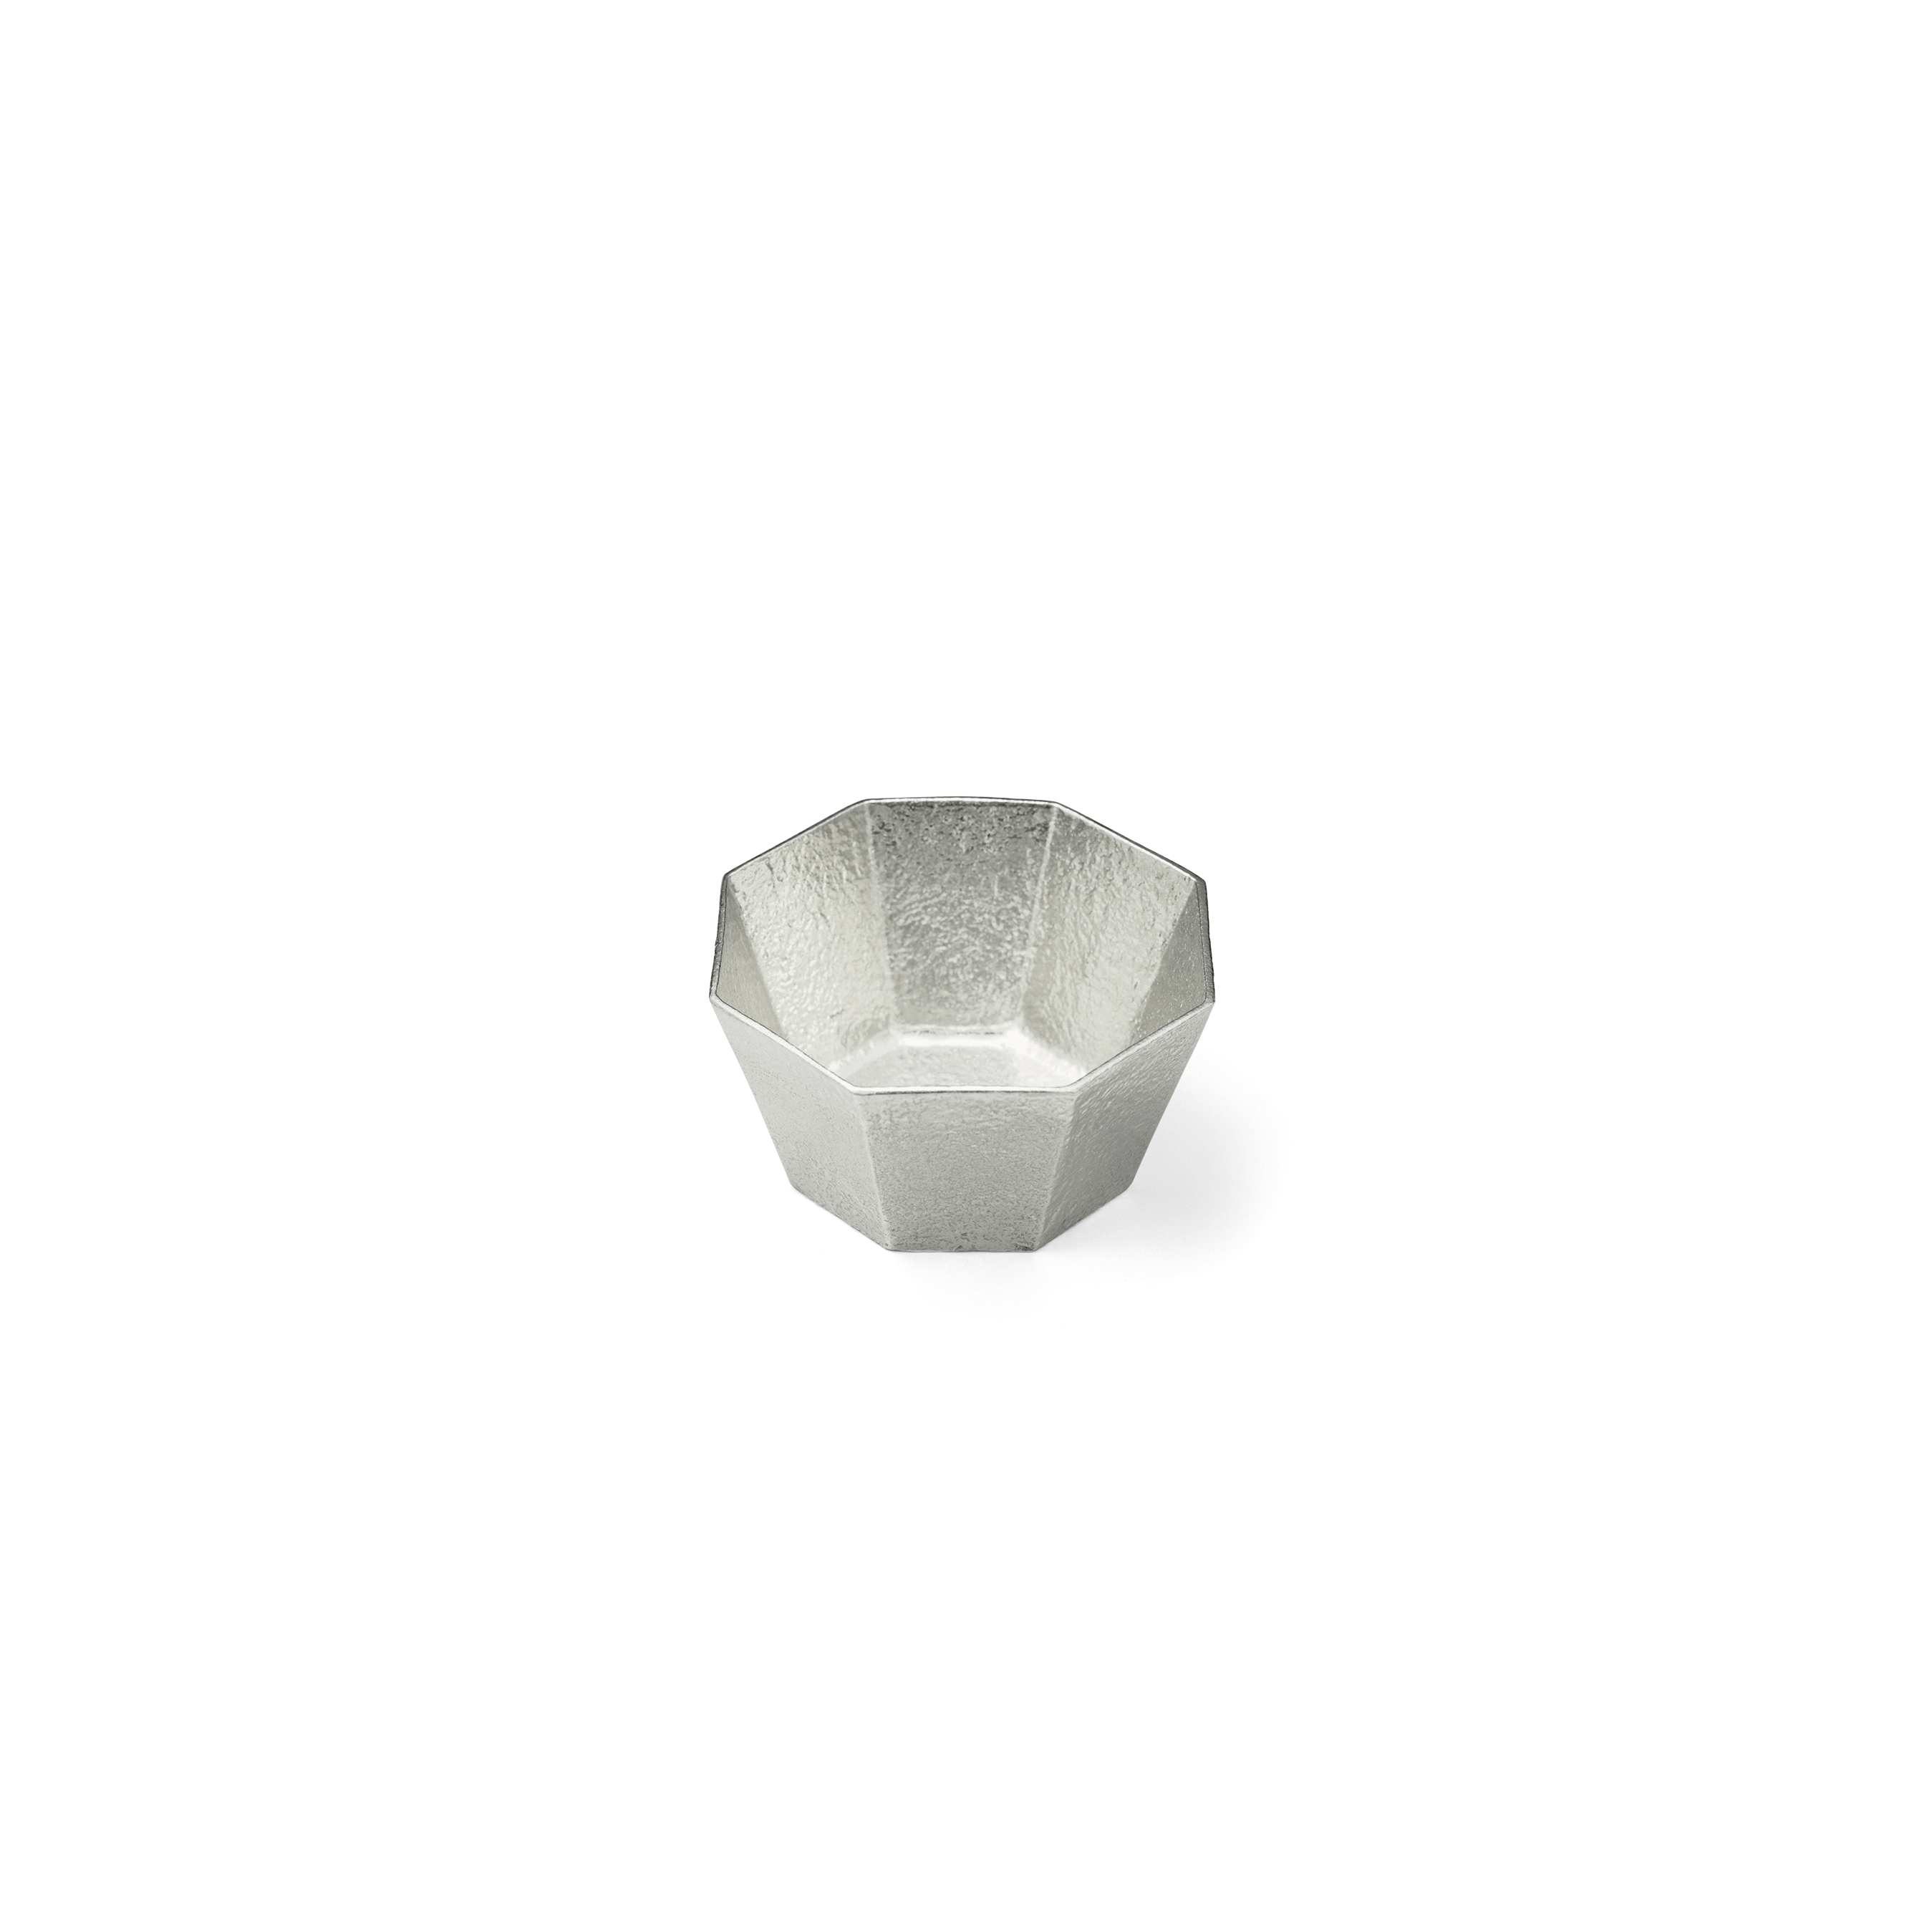 Nousaku Japanese Kuzushi - Ori Tin Bowl in Medium